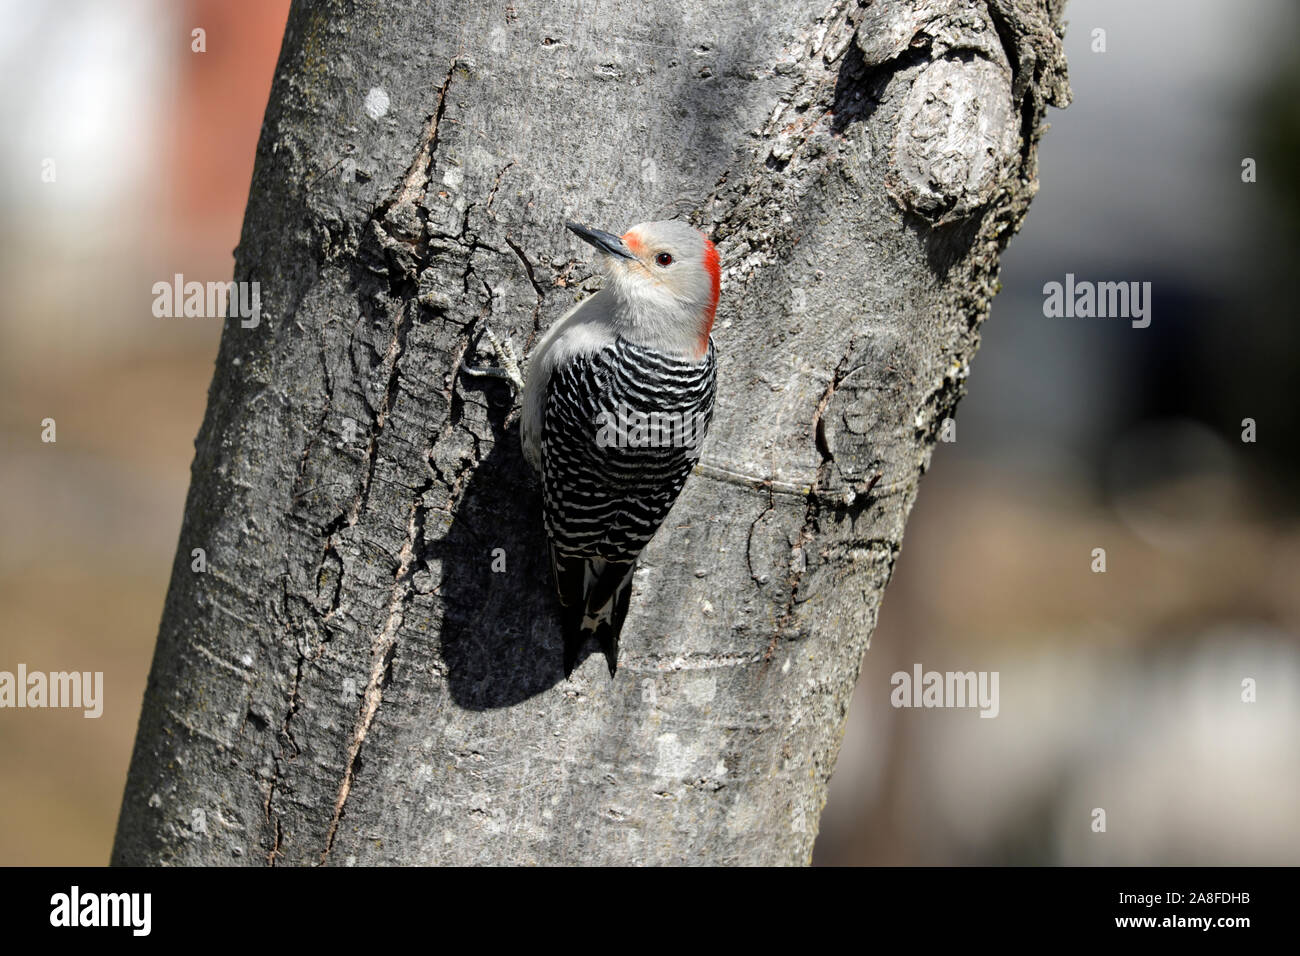 Eine weibliche Red-bellied Woodpecker (Melanerpes carolinus) auf den Stamm eines Ahorn Baum im Frühling Stockfoto